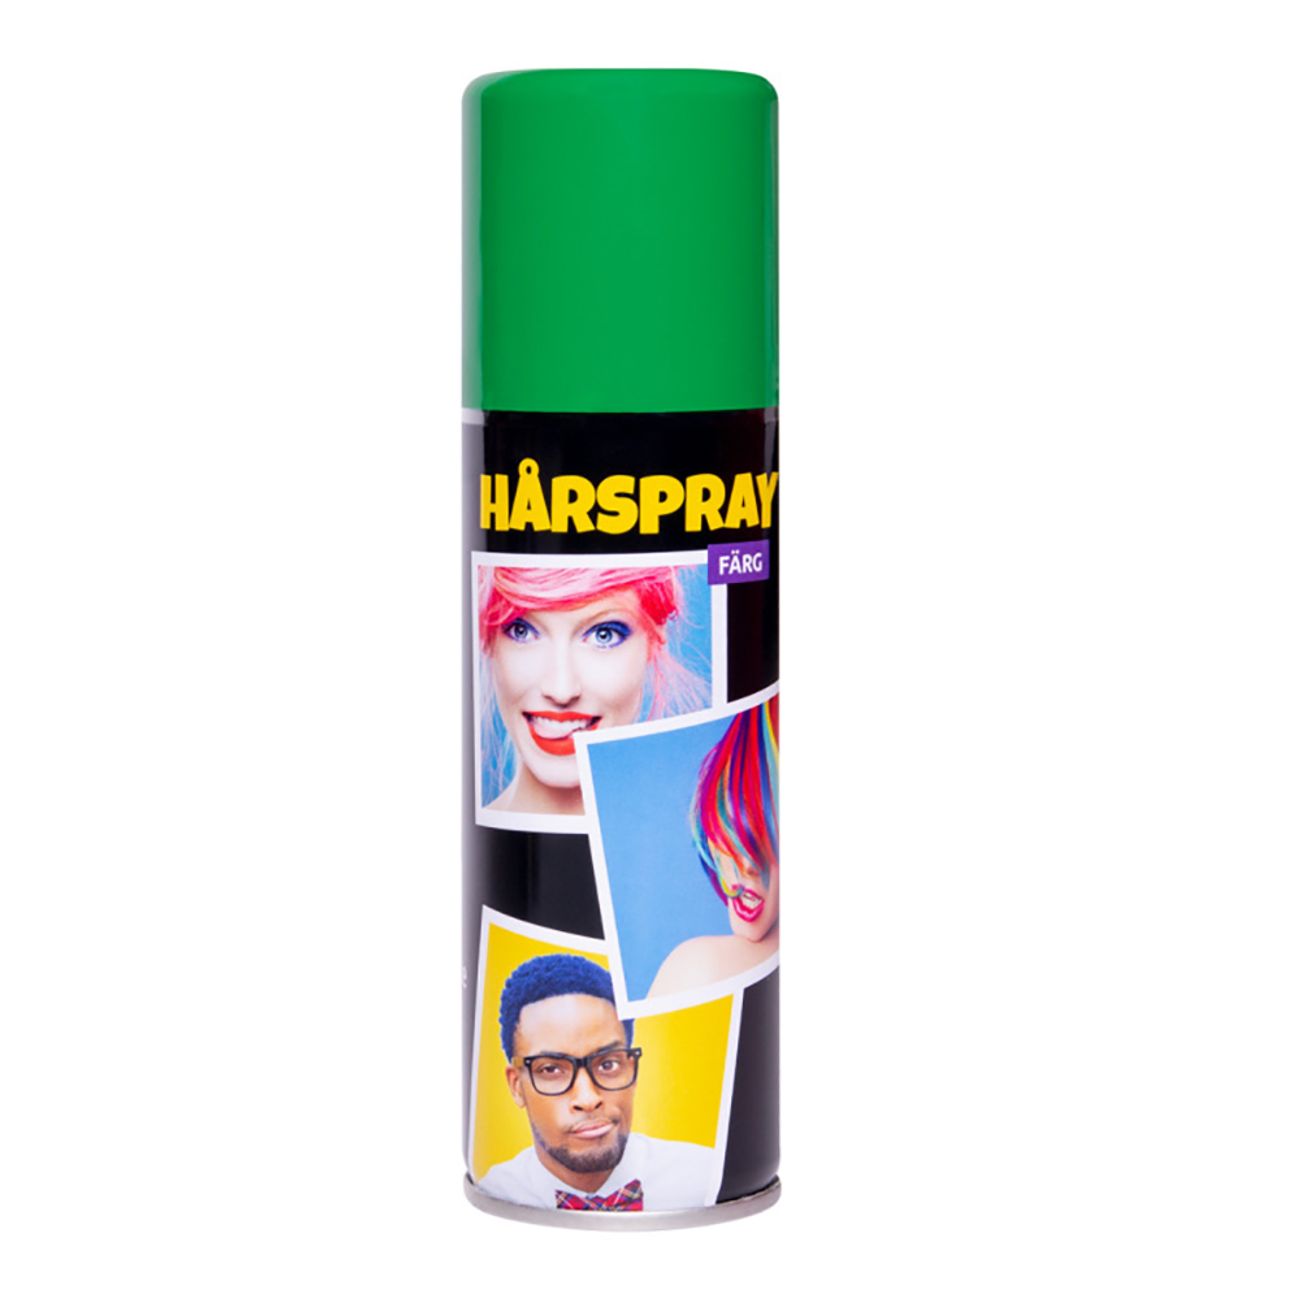 harspray-farg-77125-6